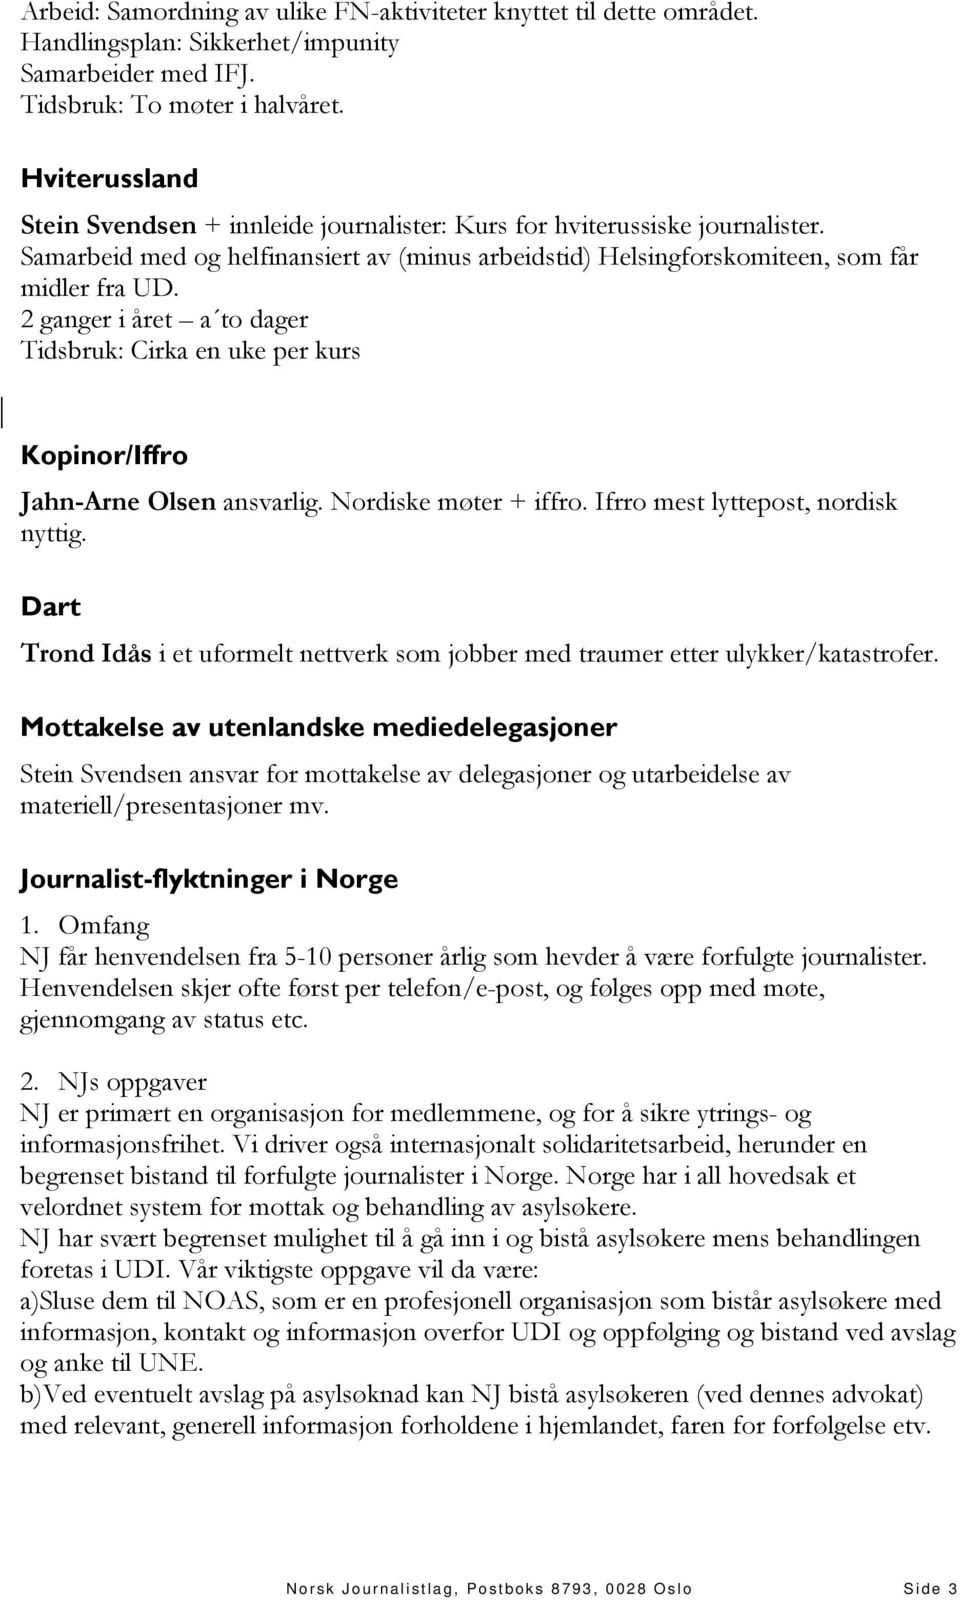 2 ganger i året a to dager Tidsbruk: Cirka en uke per kurs Kopinor/Iffro Jahn-Arne Olsen ansvarlig. Nordiske møter + iffro. Ifrro mest lyttepost, nordisk nyttig.